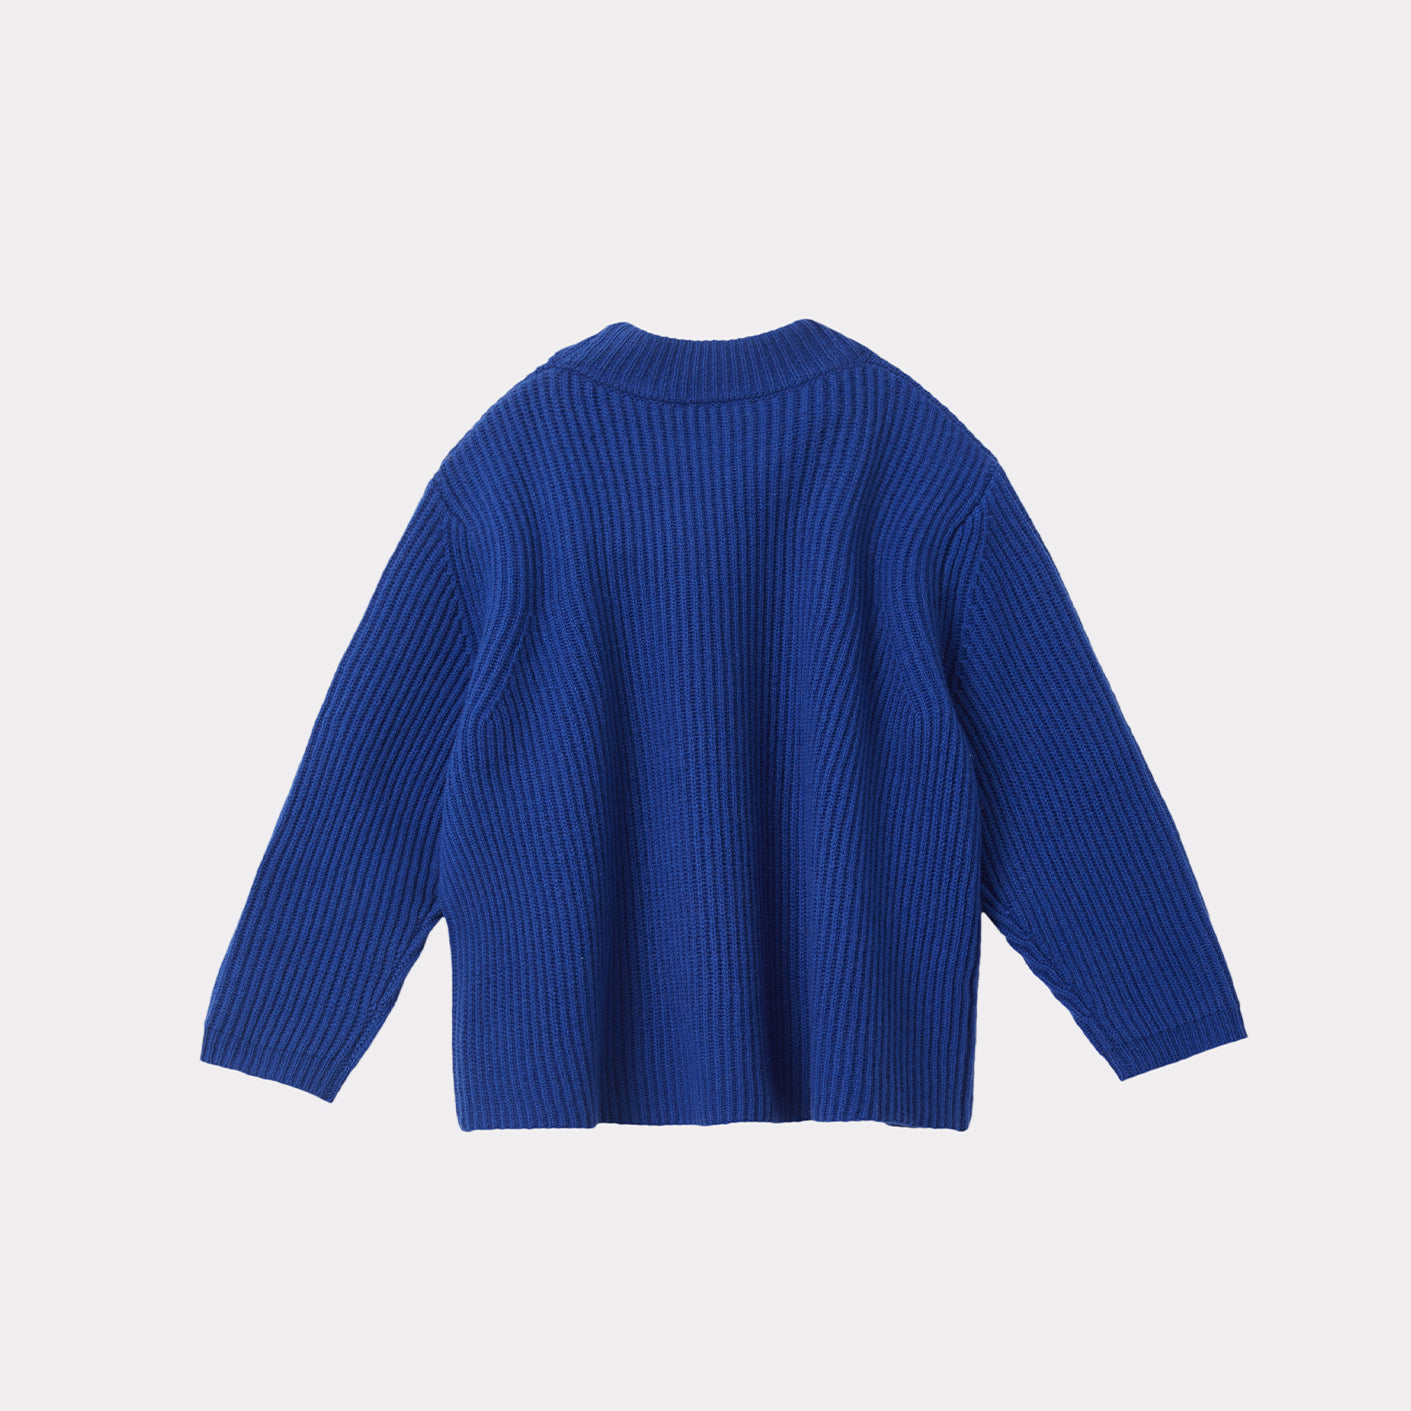 Boys & Girls Blue Wool Sweater